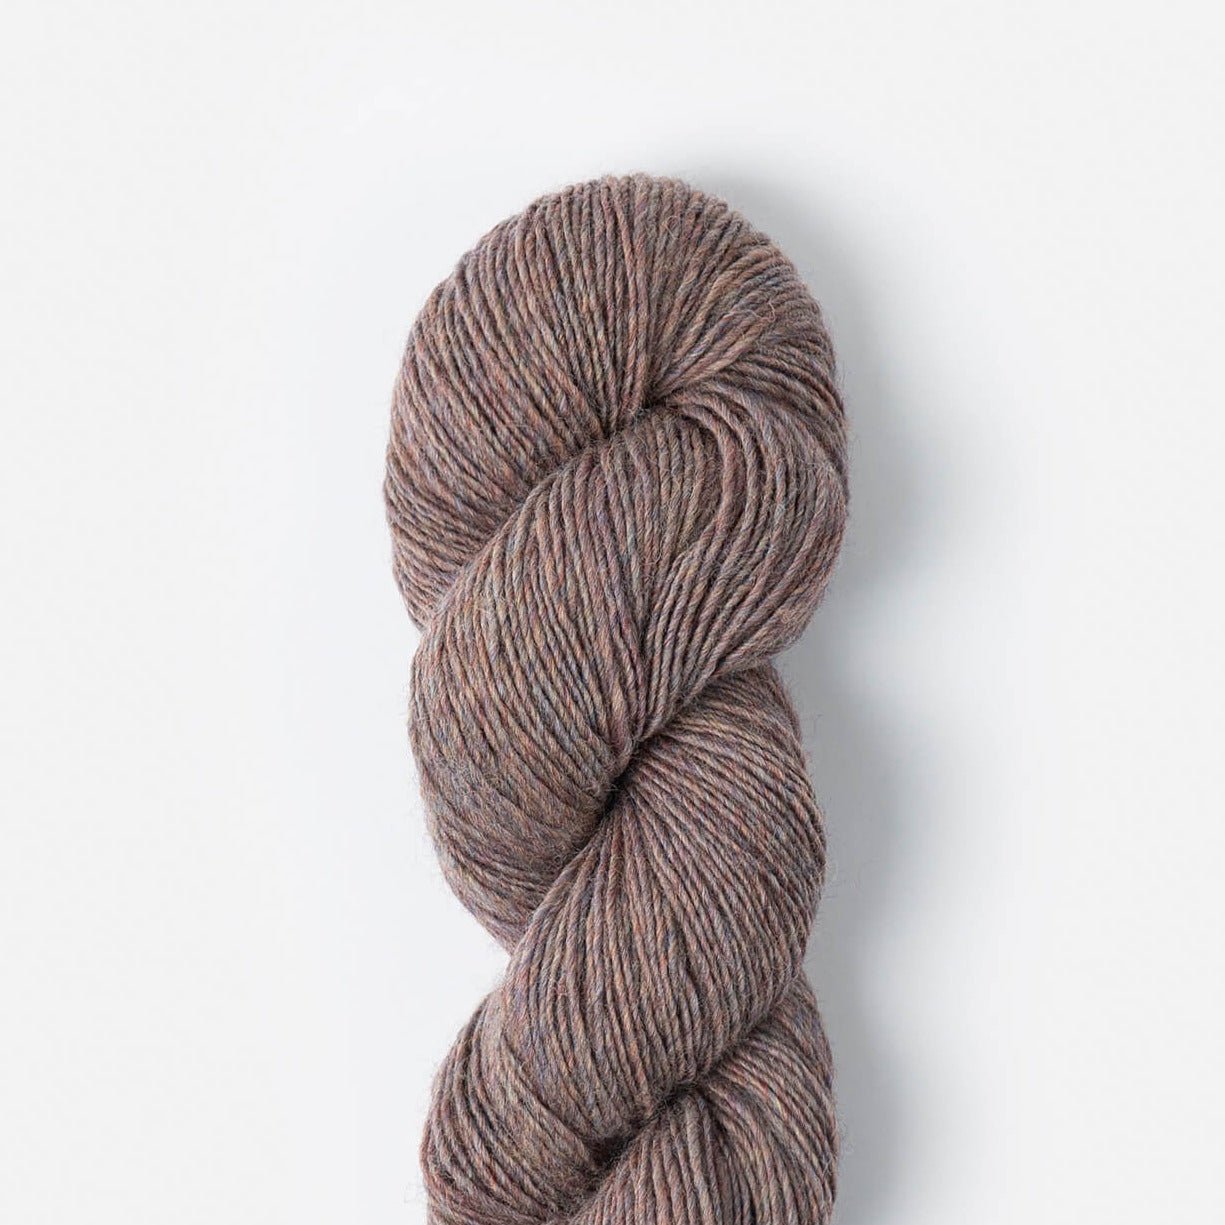 Tivoli Shawl Knitting Kit - Mary Pranica - 2322 Northern Lights - The Little Yarn Store